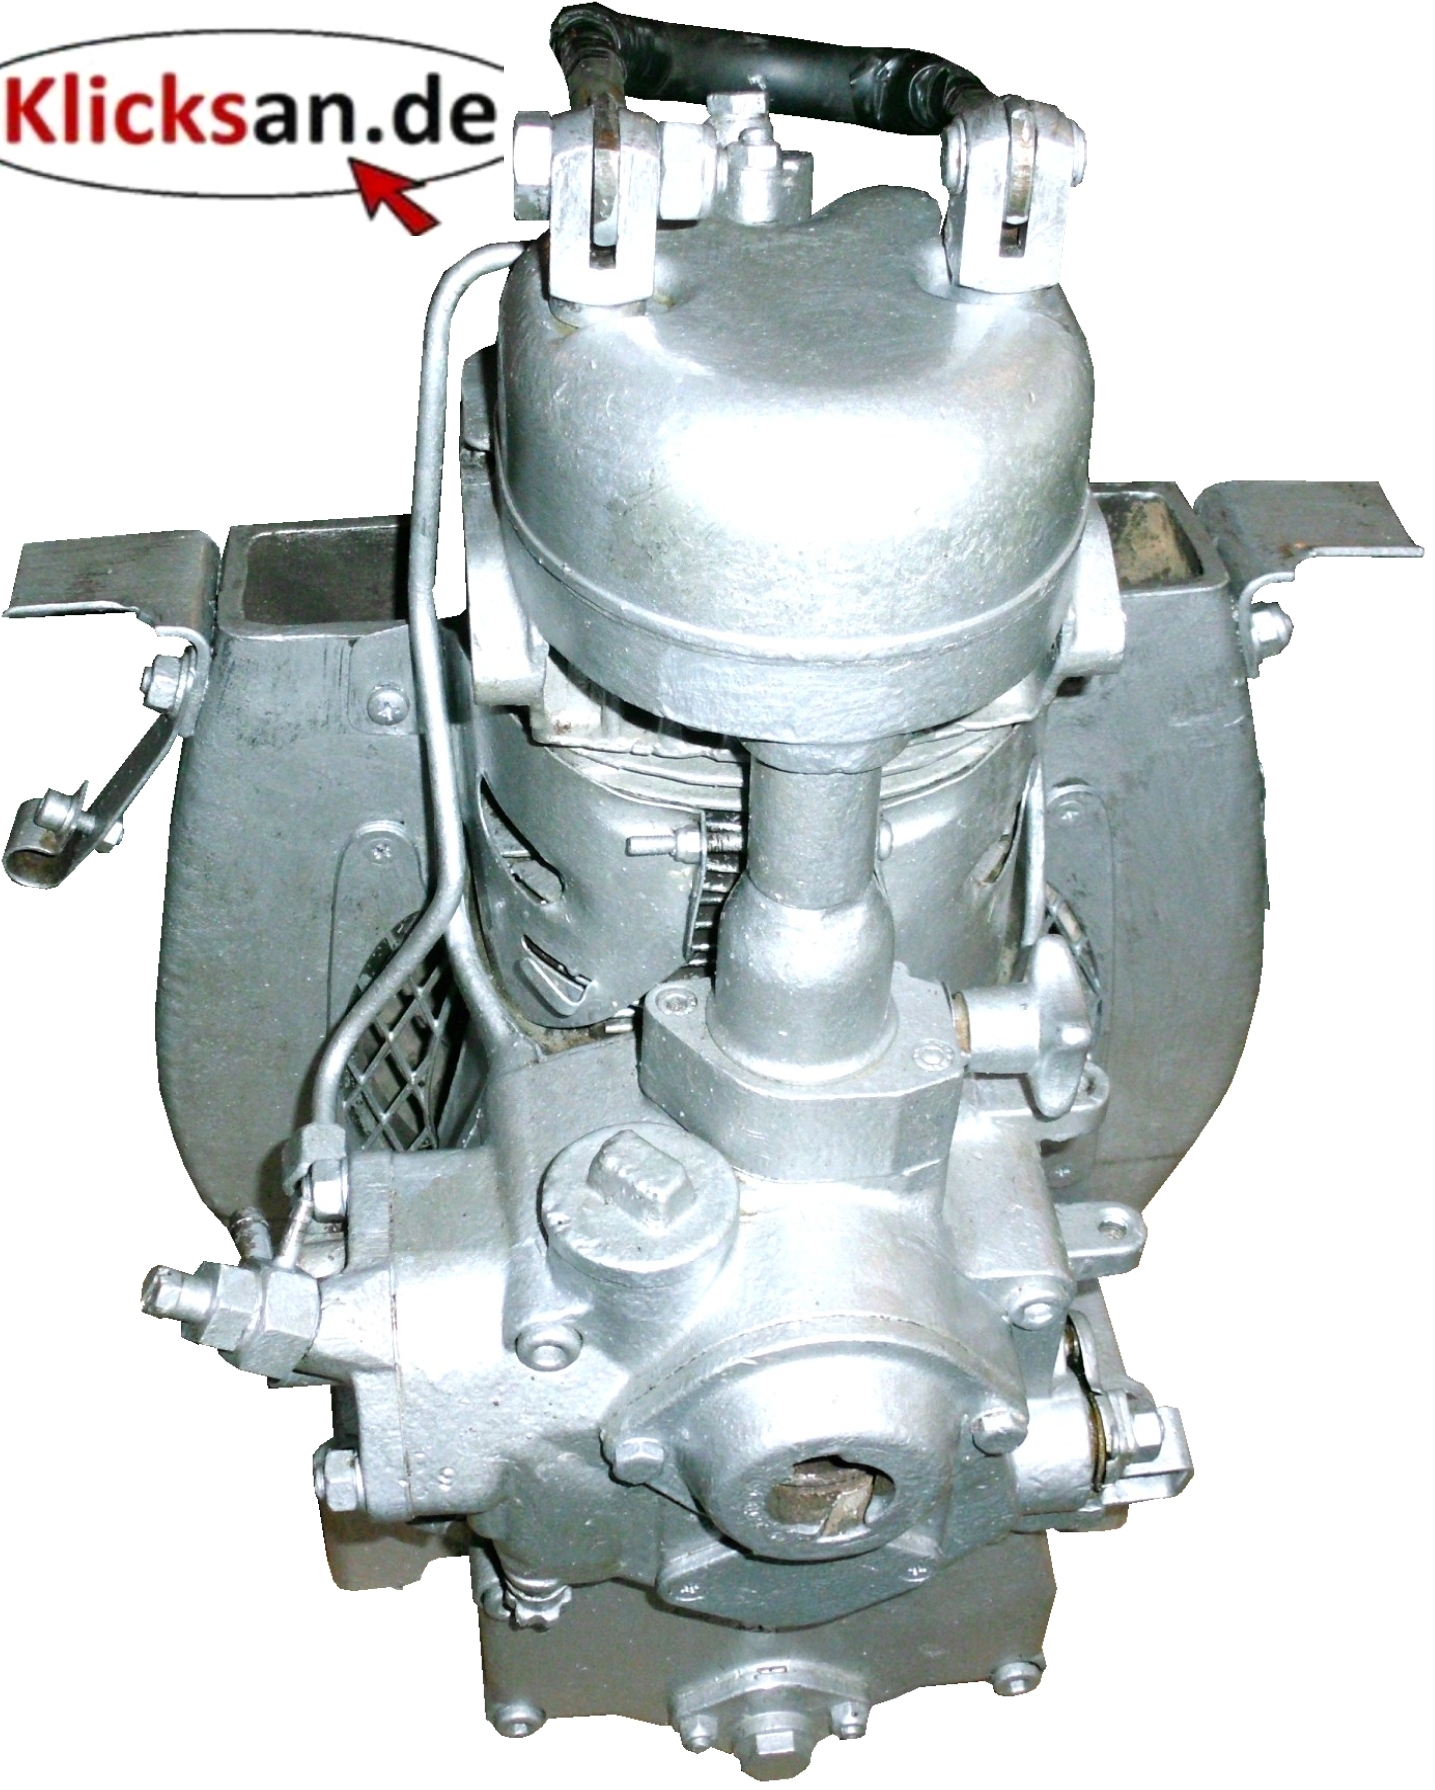 GL112_Farymann_15A430_Diesel_Motor_Klicksan_3